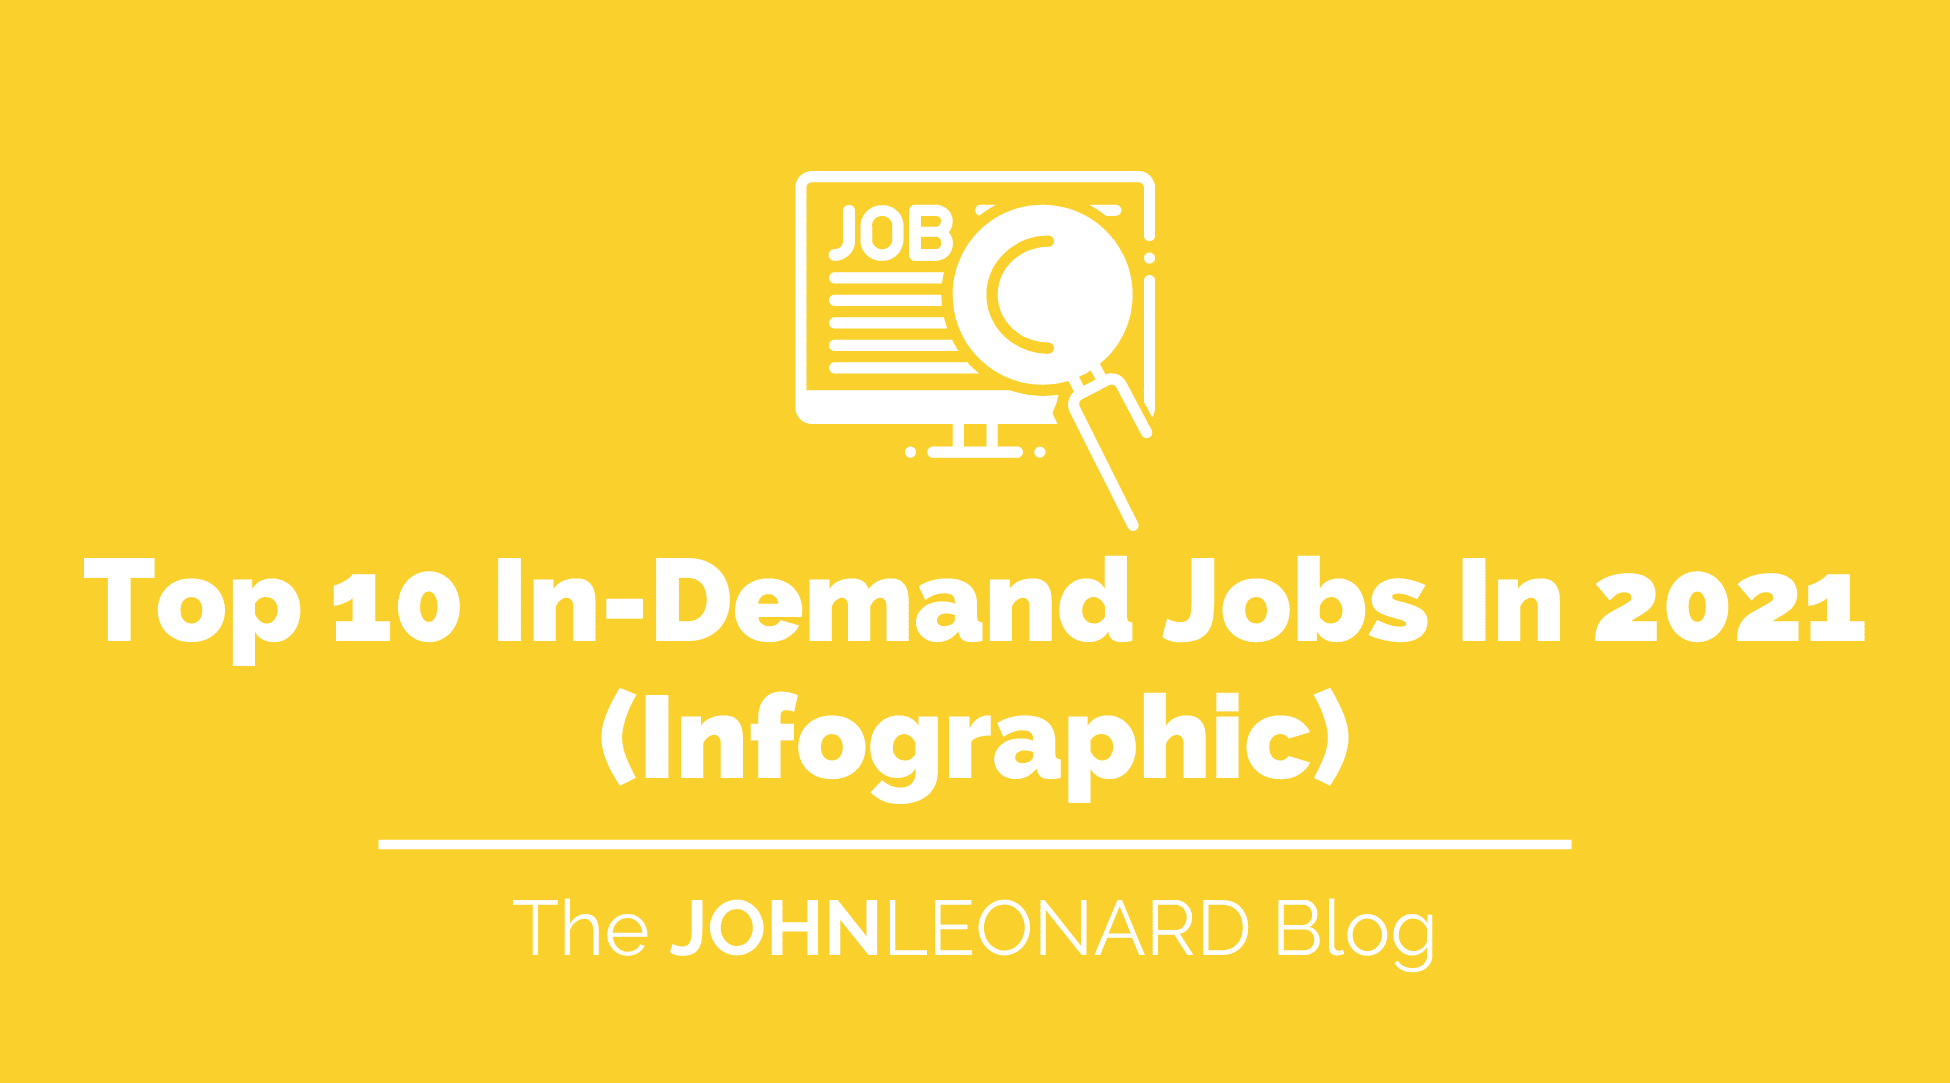 Top 10 In-Demand Jobs in 2021 (Infographic)